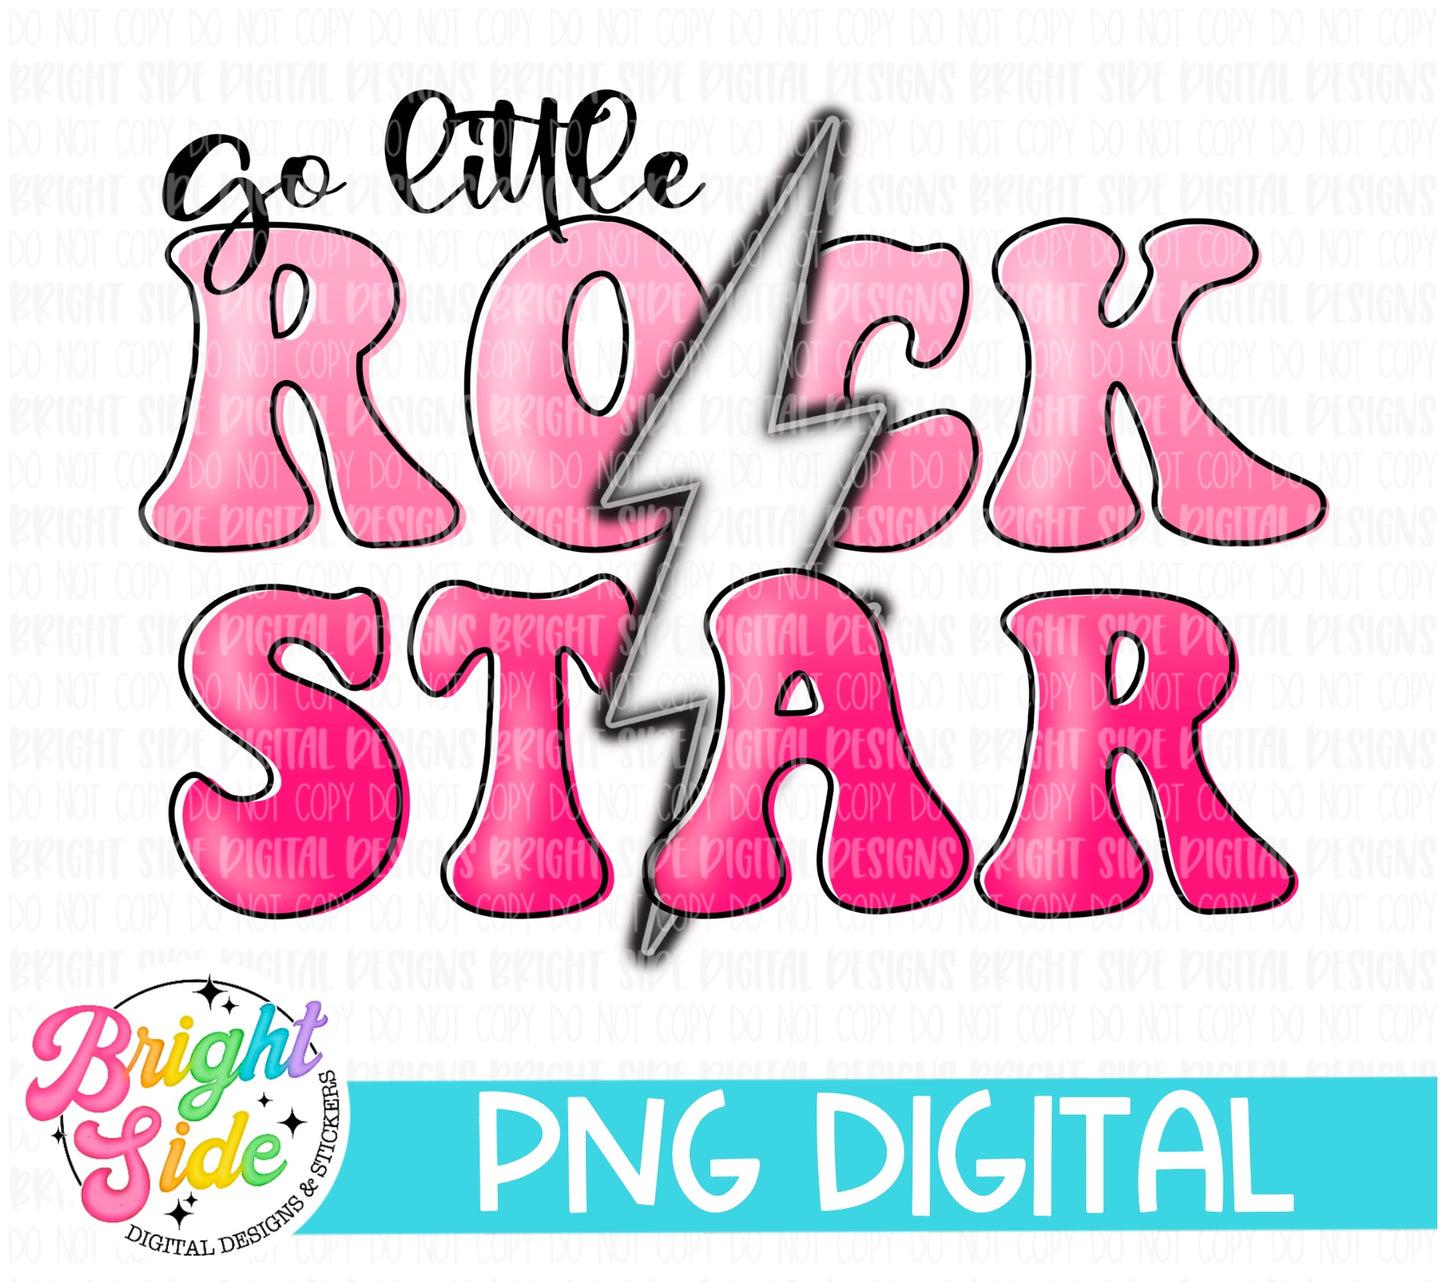 Go Little Rock star -pink ombré